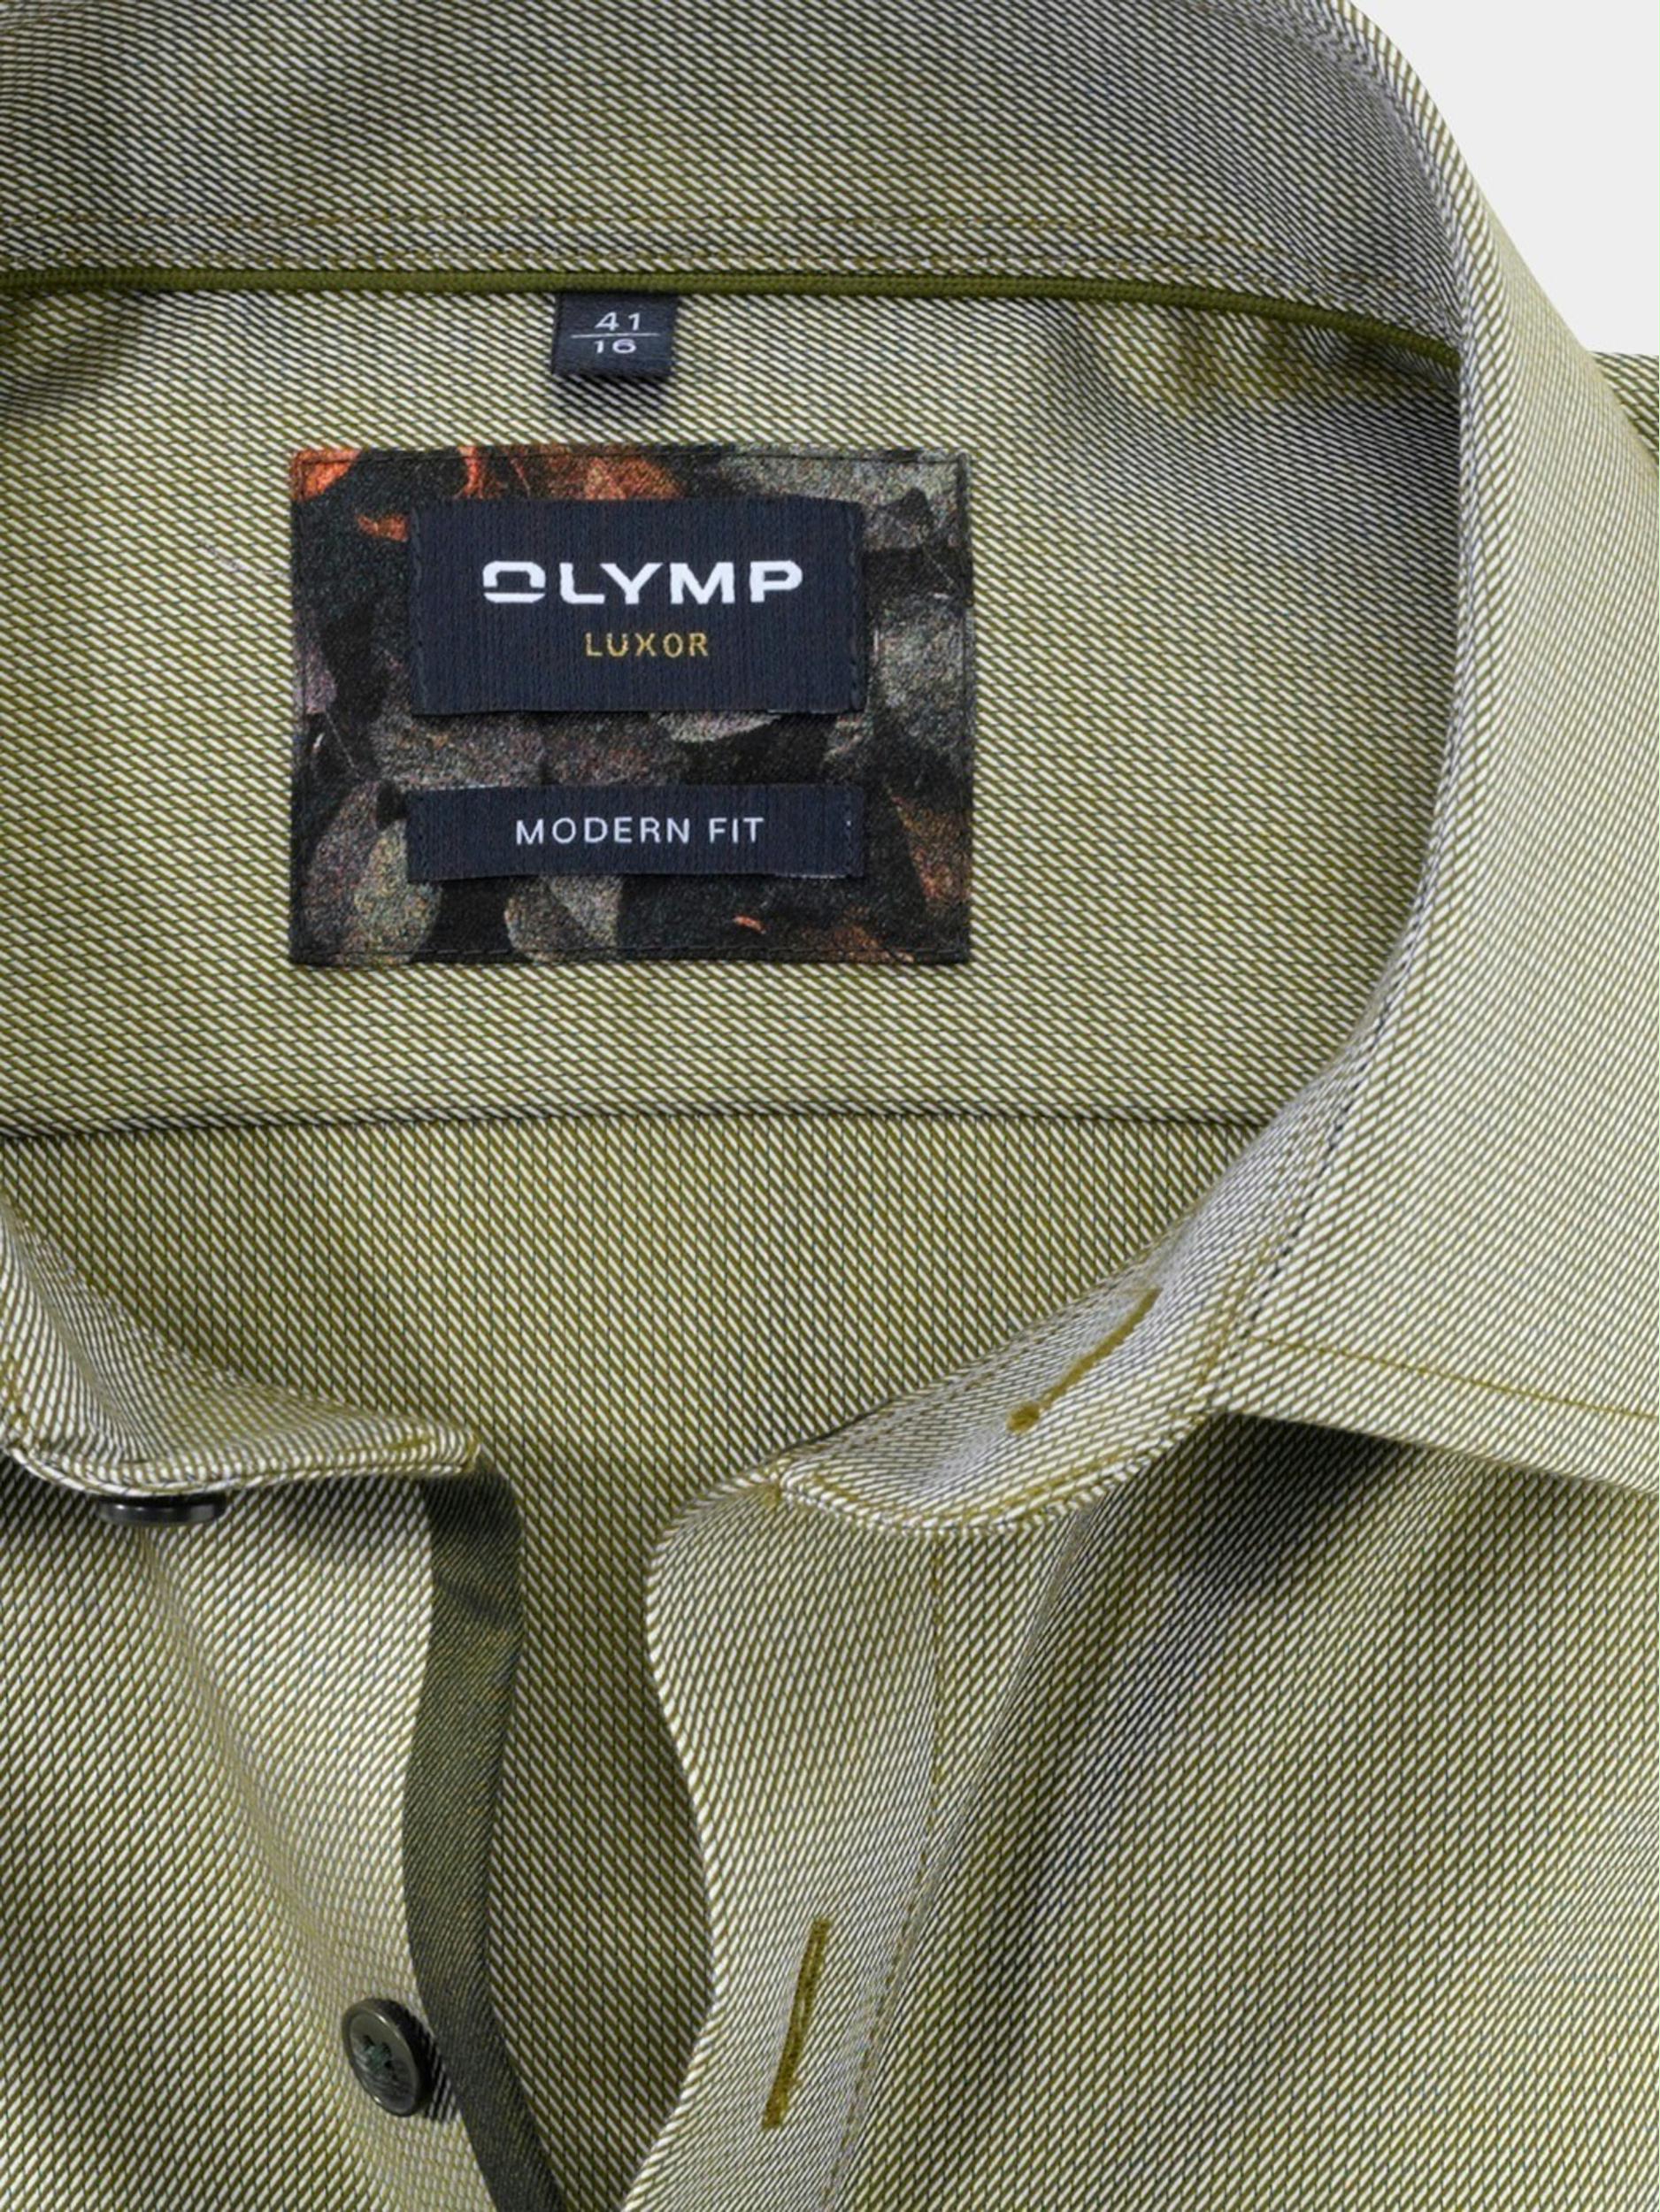 Olymp Business hemd lange mouw Groen 1260/24 Hemden 126024/46